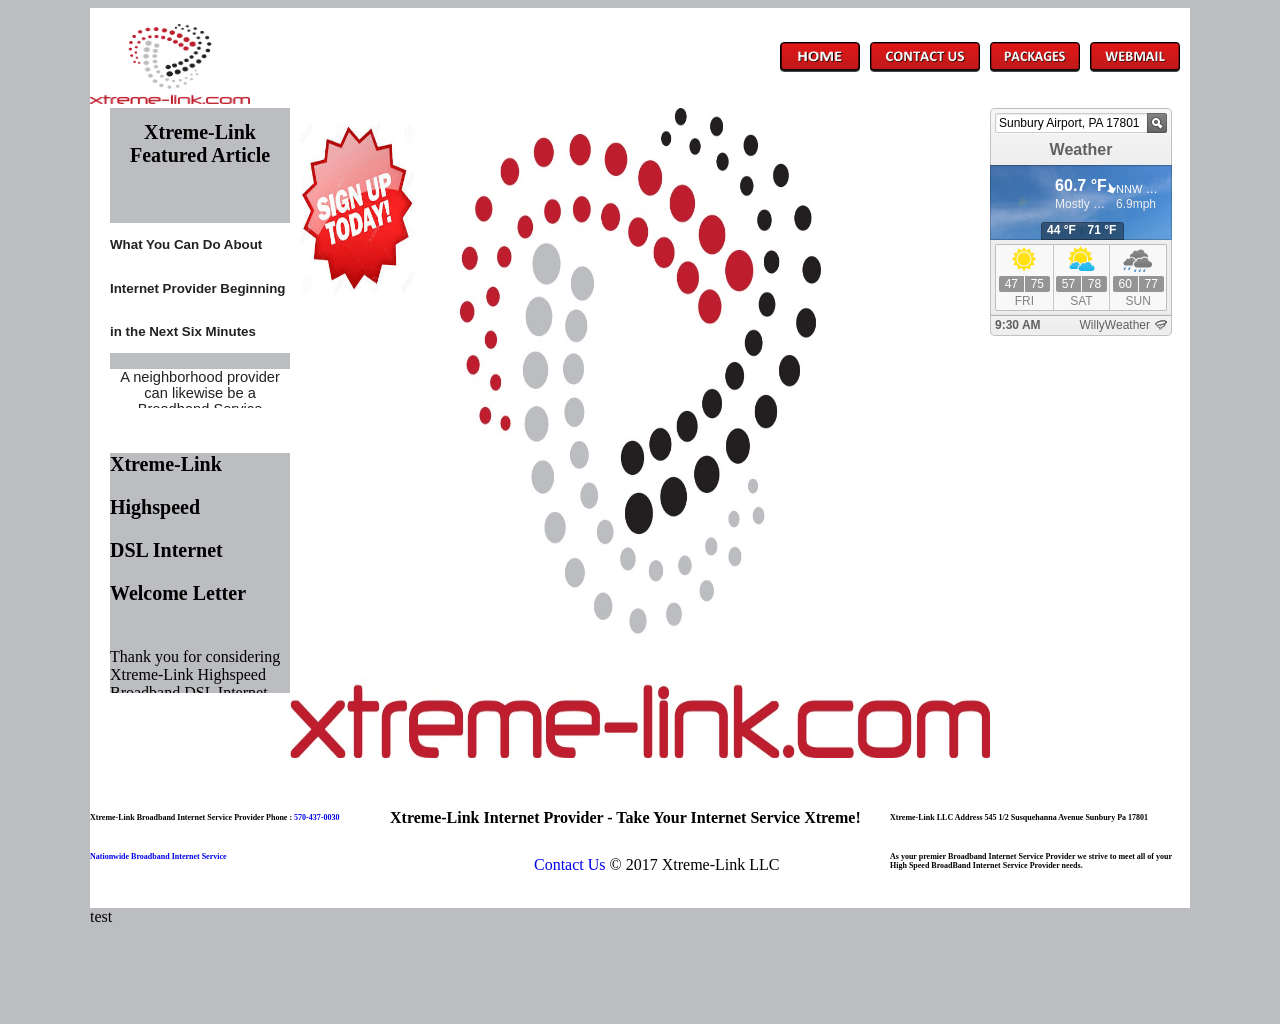 xtreme-link.com